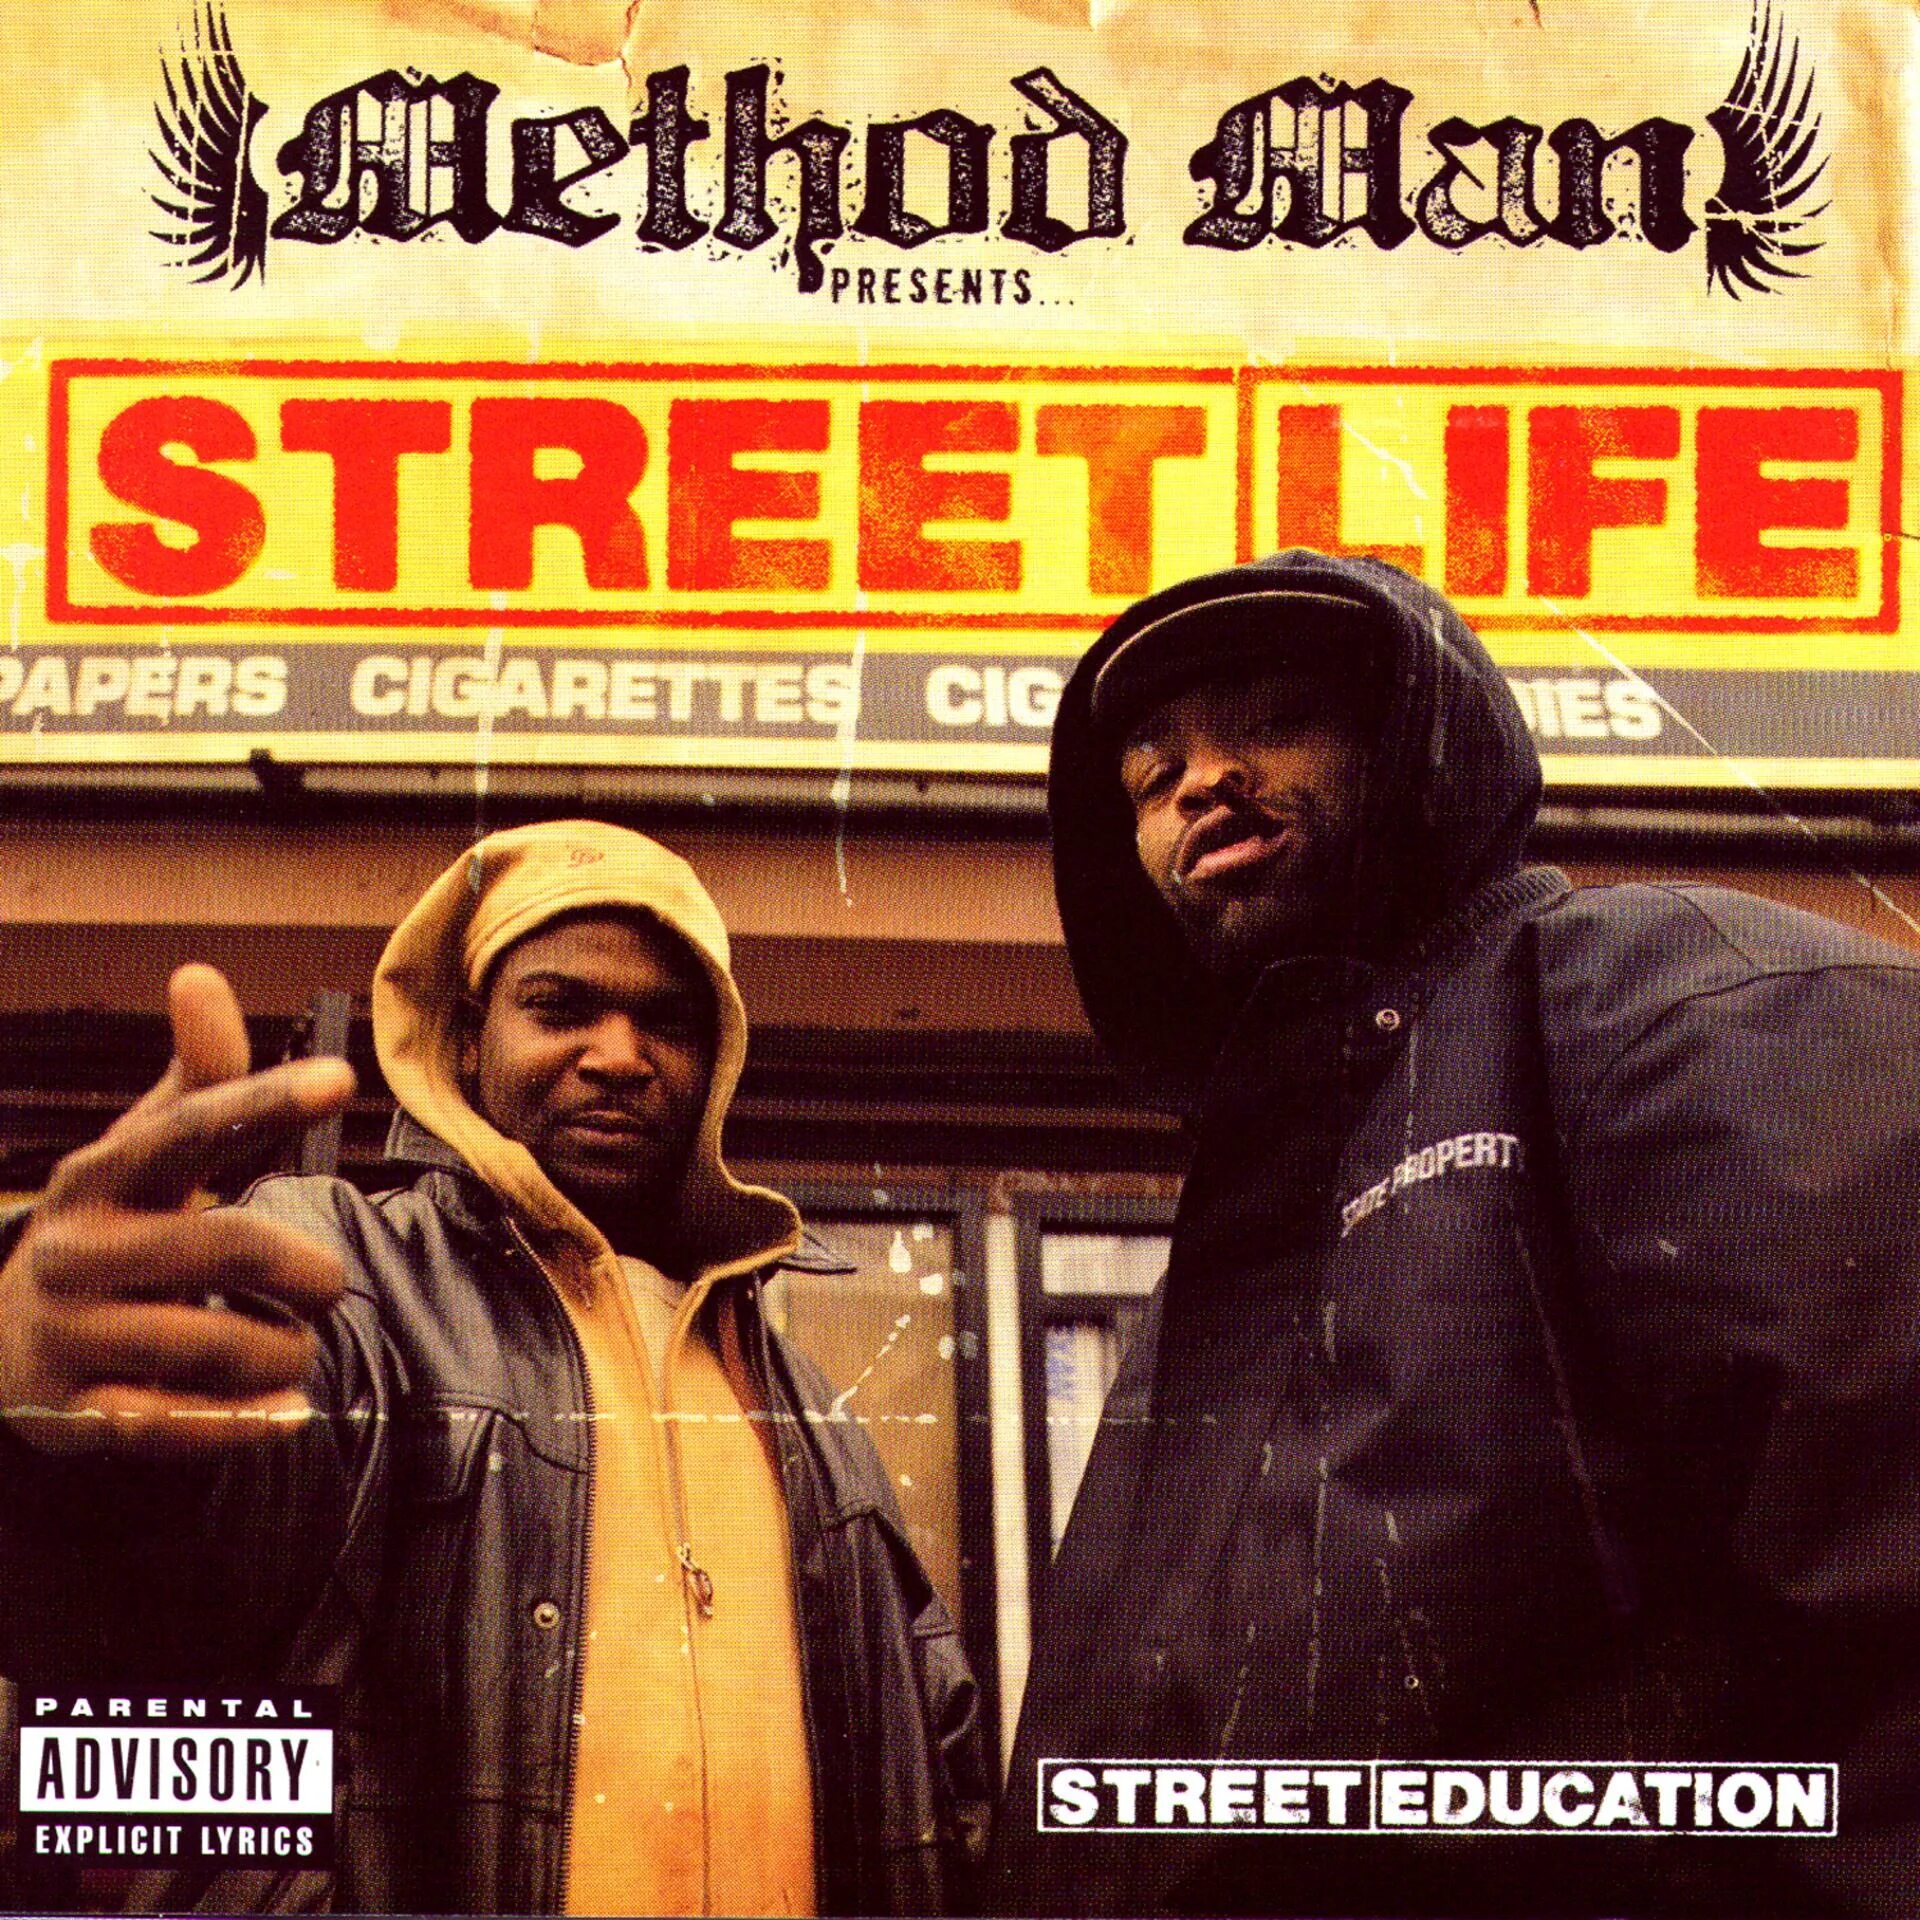 Streetlife. Method man. Method man Redman альбомы. Street Life исполнители. Street ed